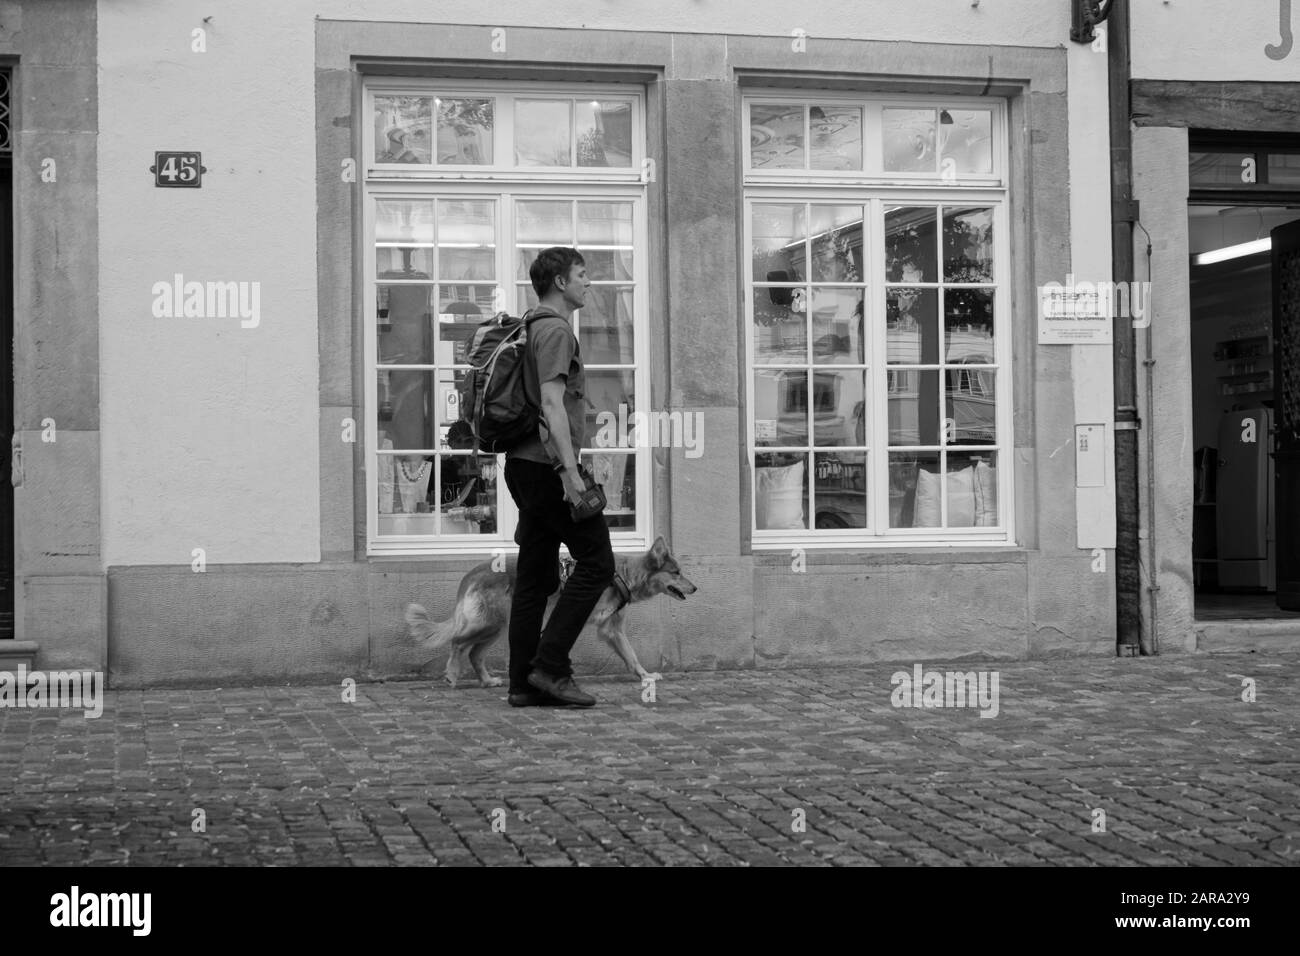 Man walking dog, Zurich, Switzerland, Europe Stock Photo